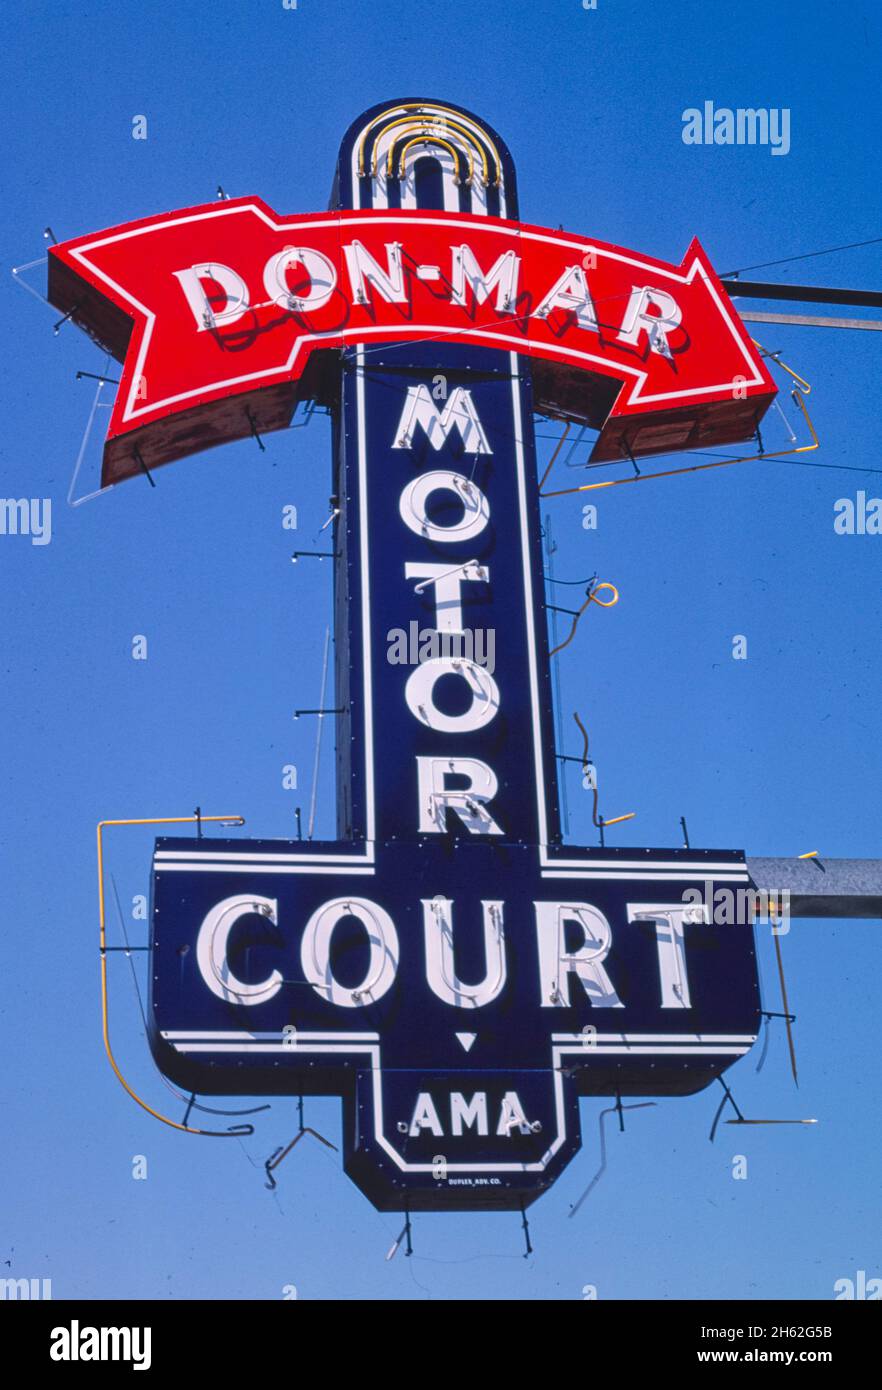 Panneau Don-Mar Motel, Austin, Texas ; env.1982 Banque D'Images